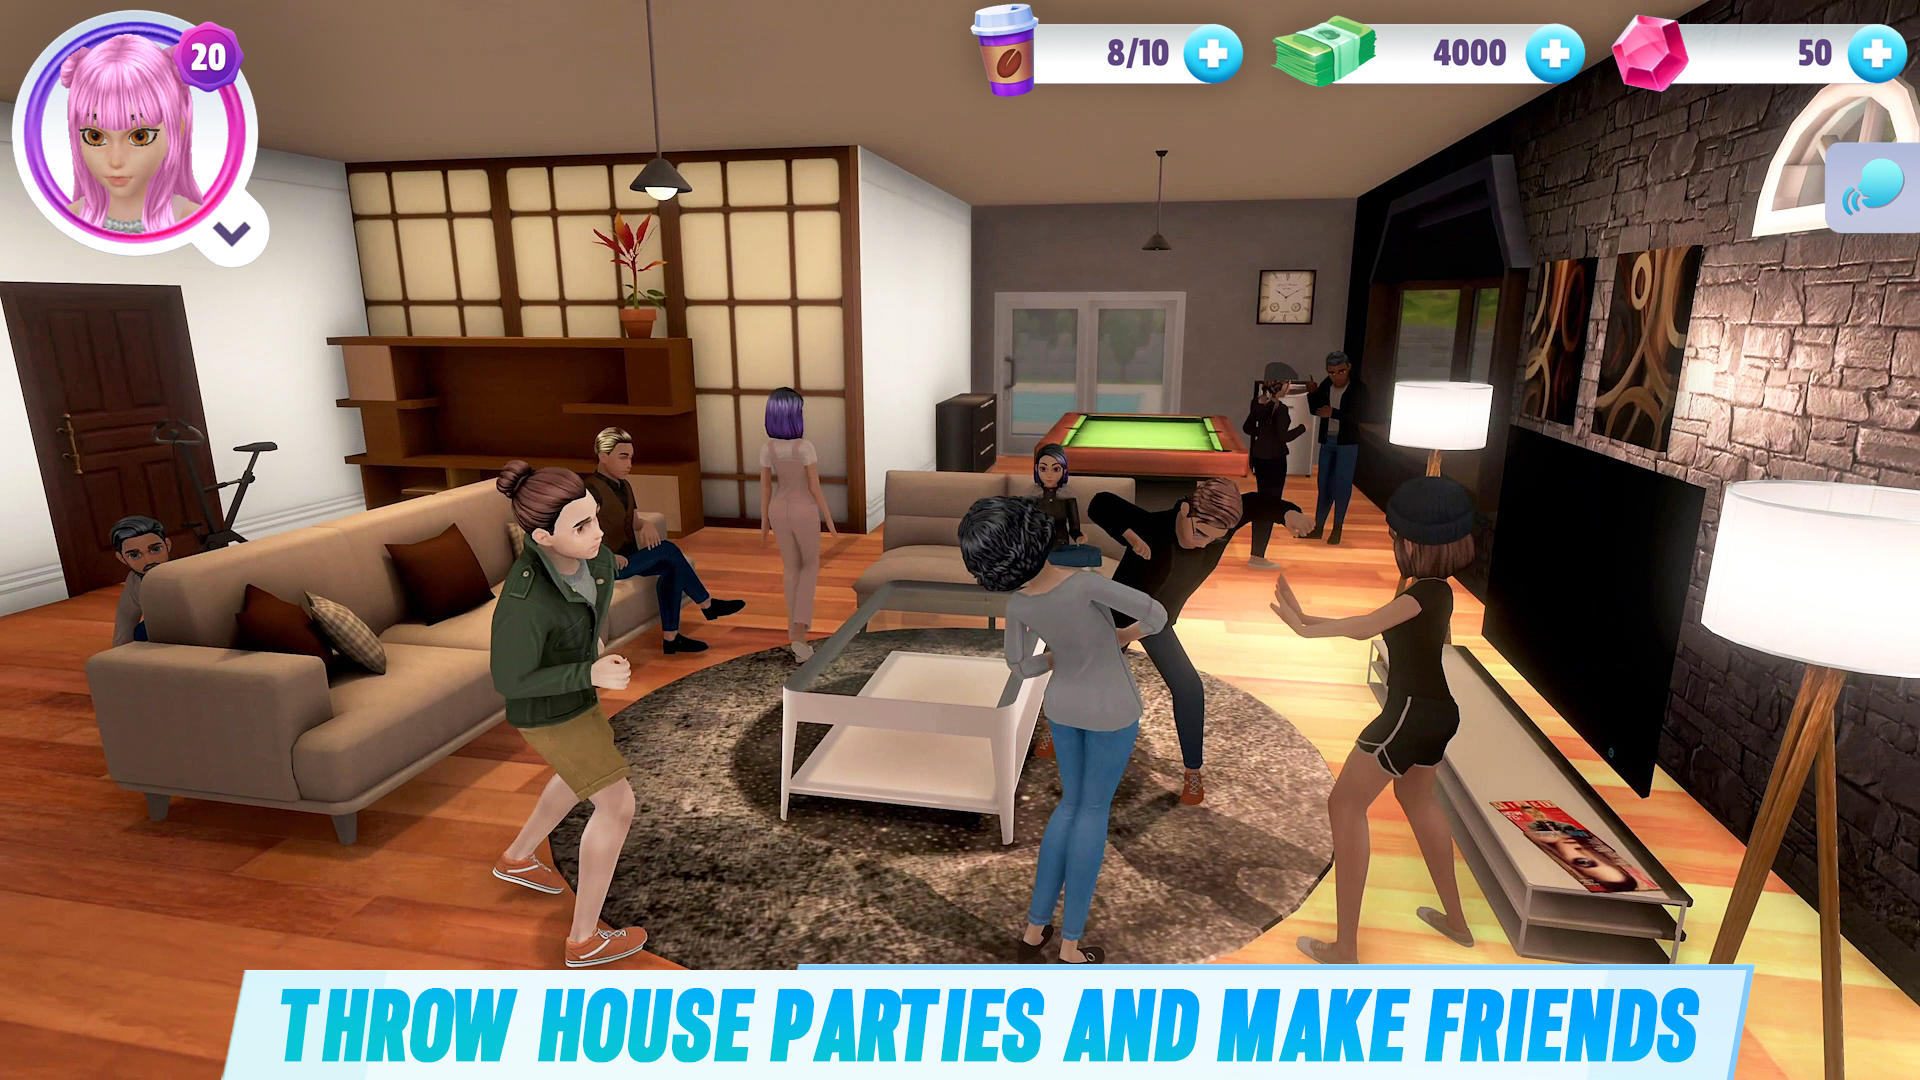 Screenshot 1 of История виртуального сима: дом и жизнь 7.6